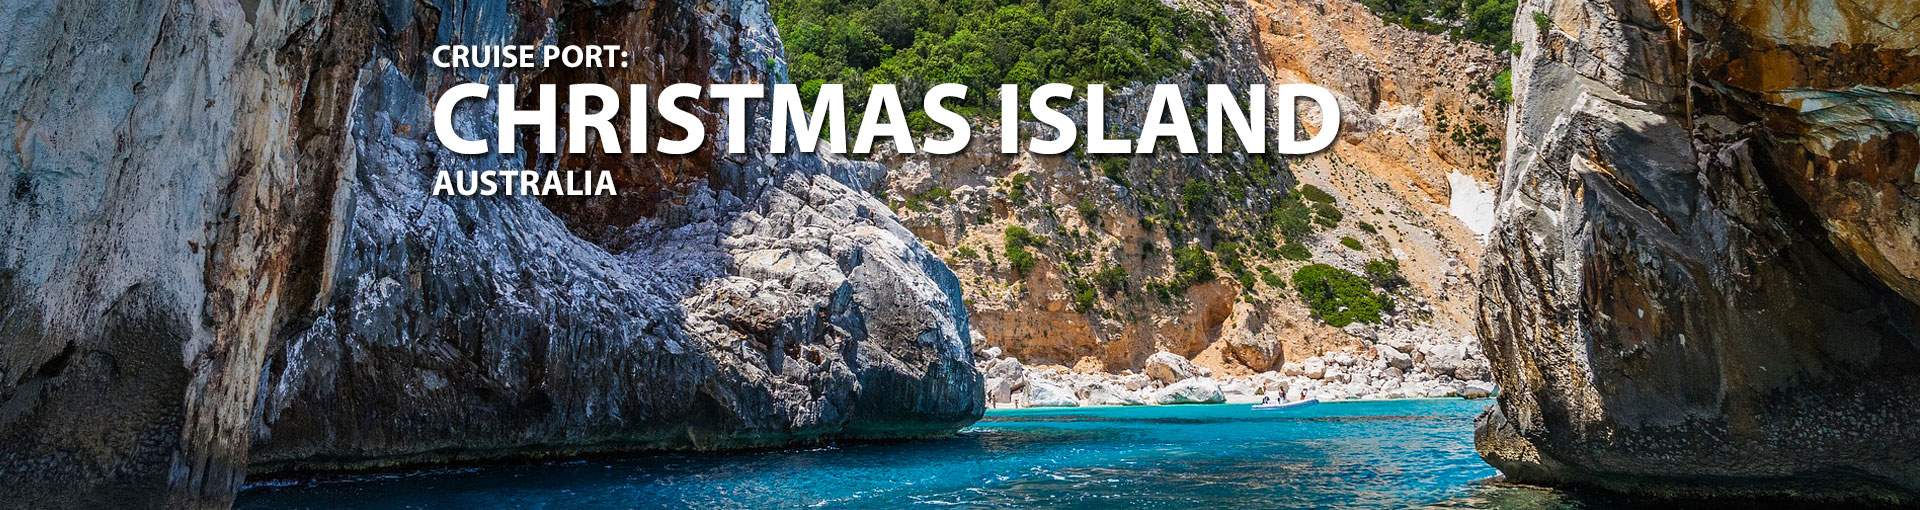 christmas island cruise ship visits